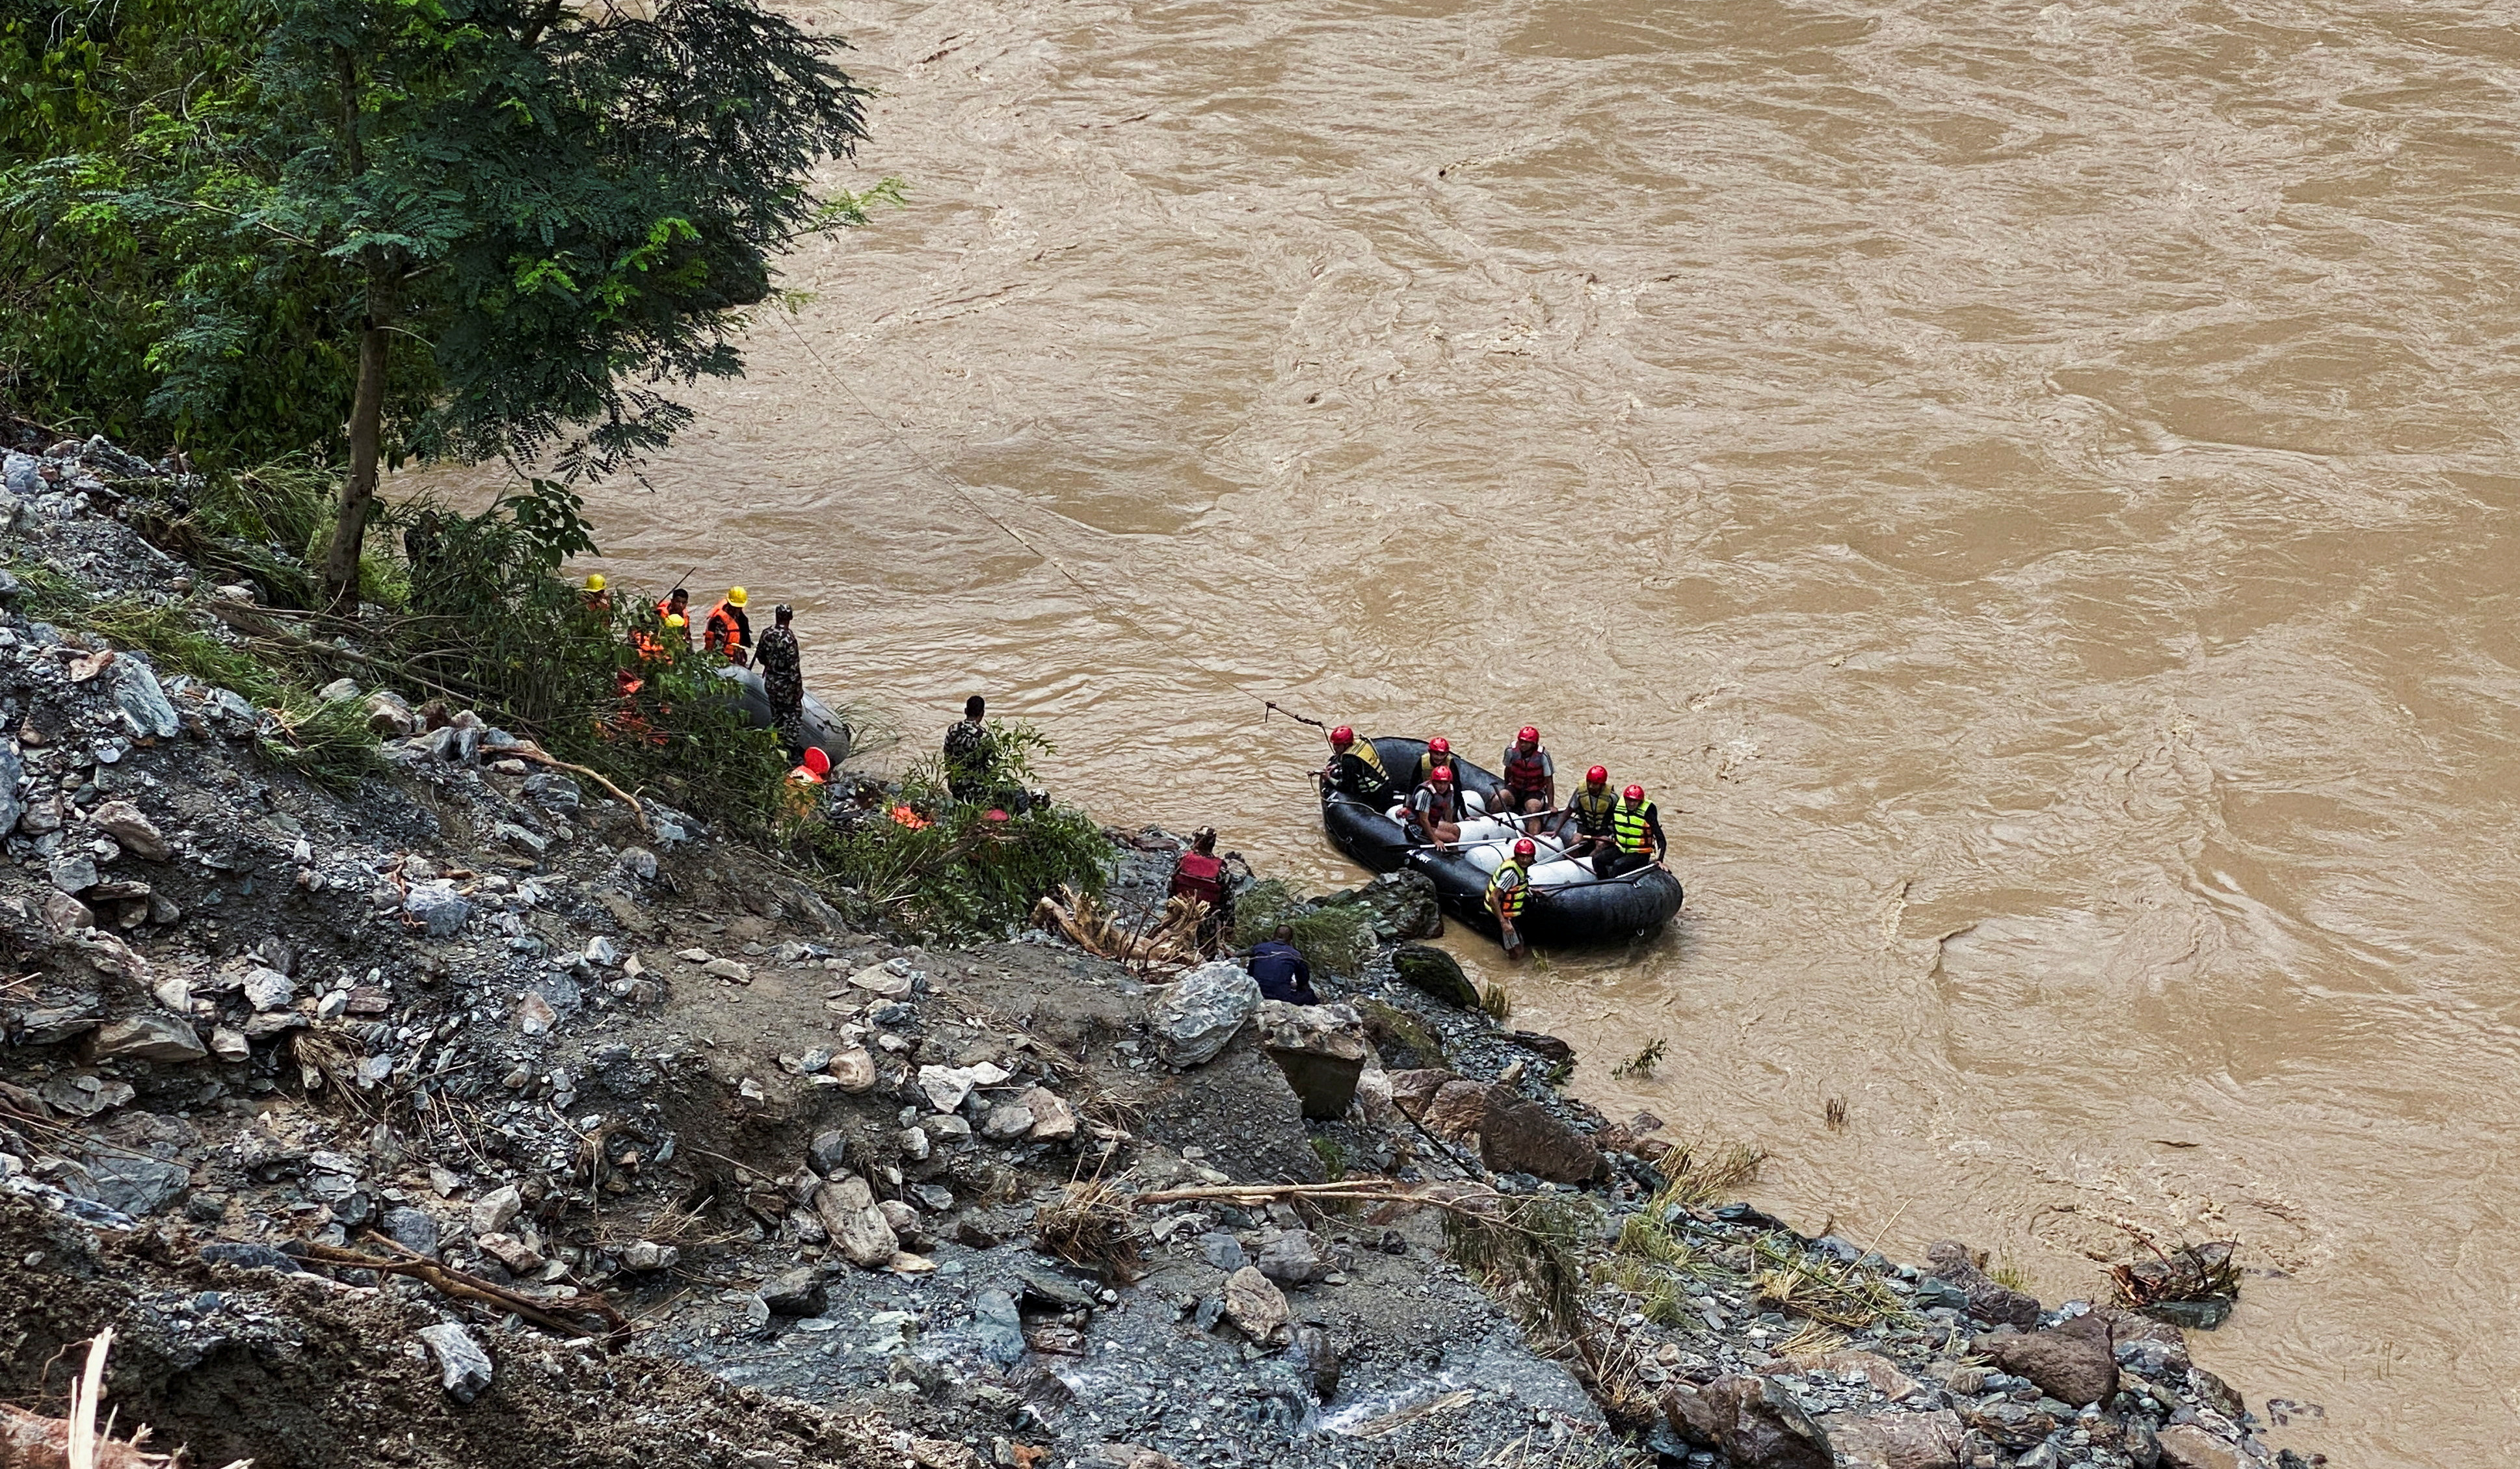 Chances of finding survivors slim after Nepal landslide, official says